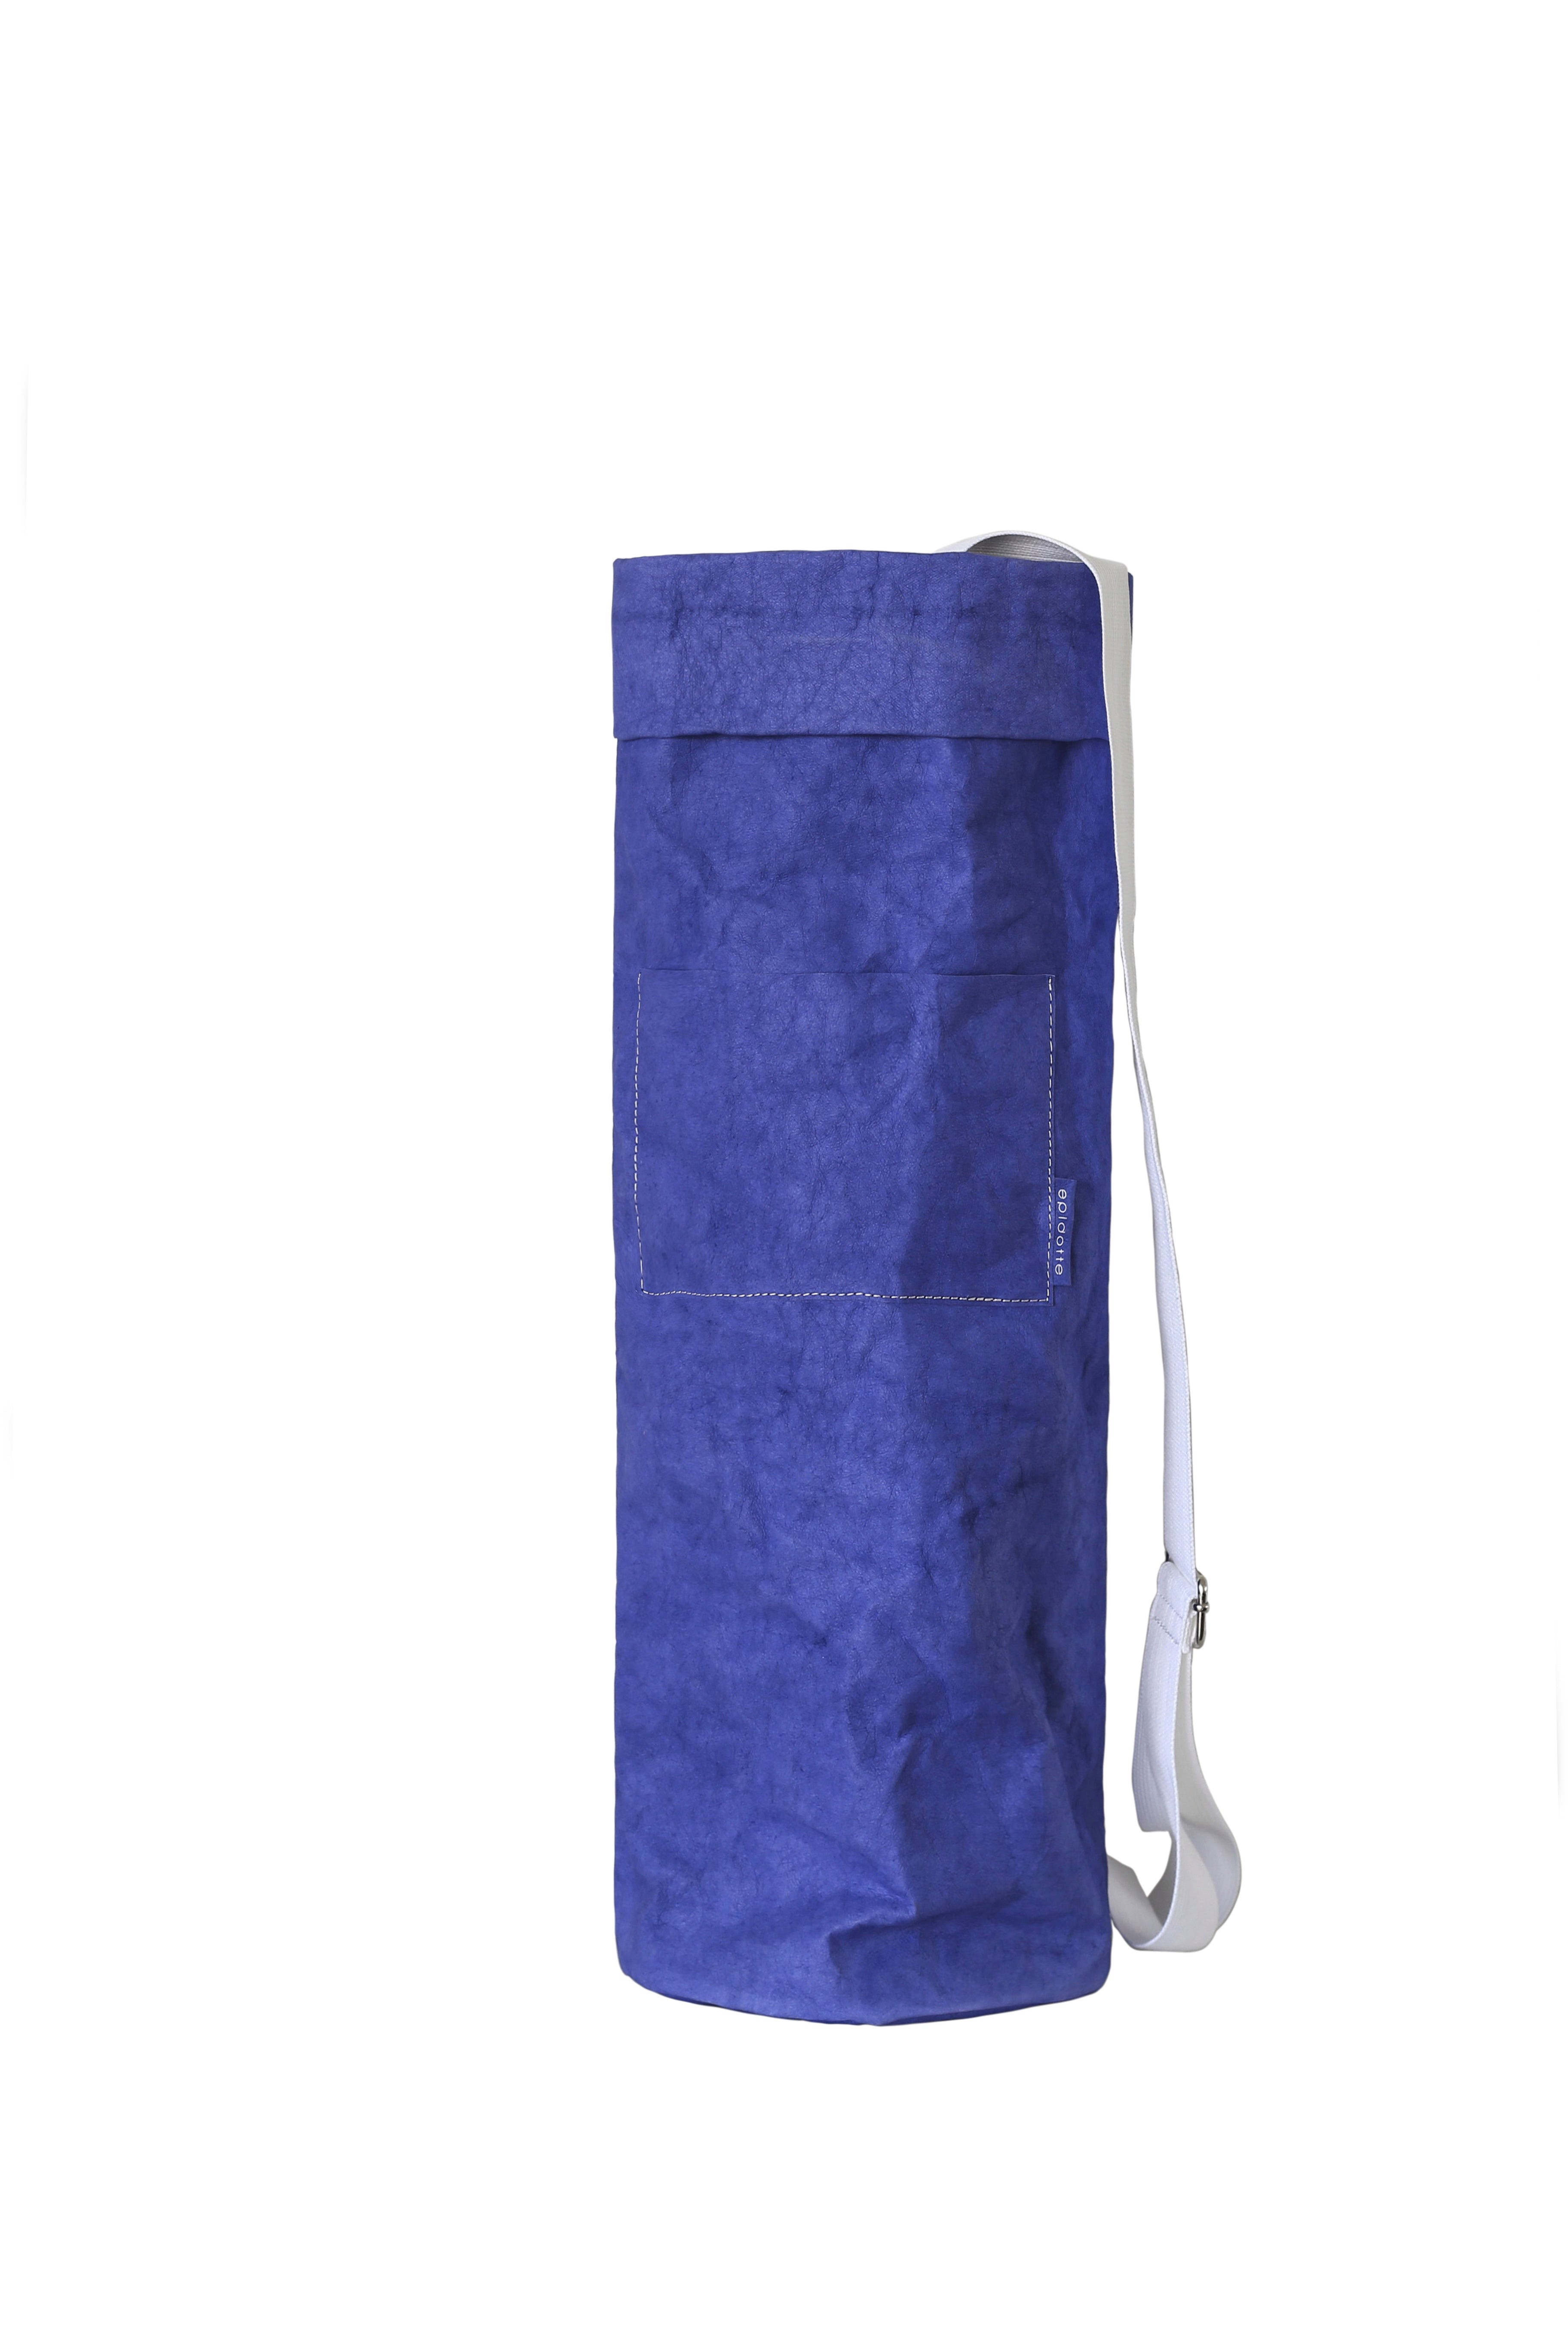 Epidotte Yoga Bag Lilac Mat Çantası